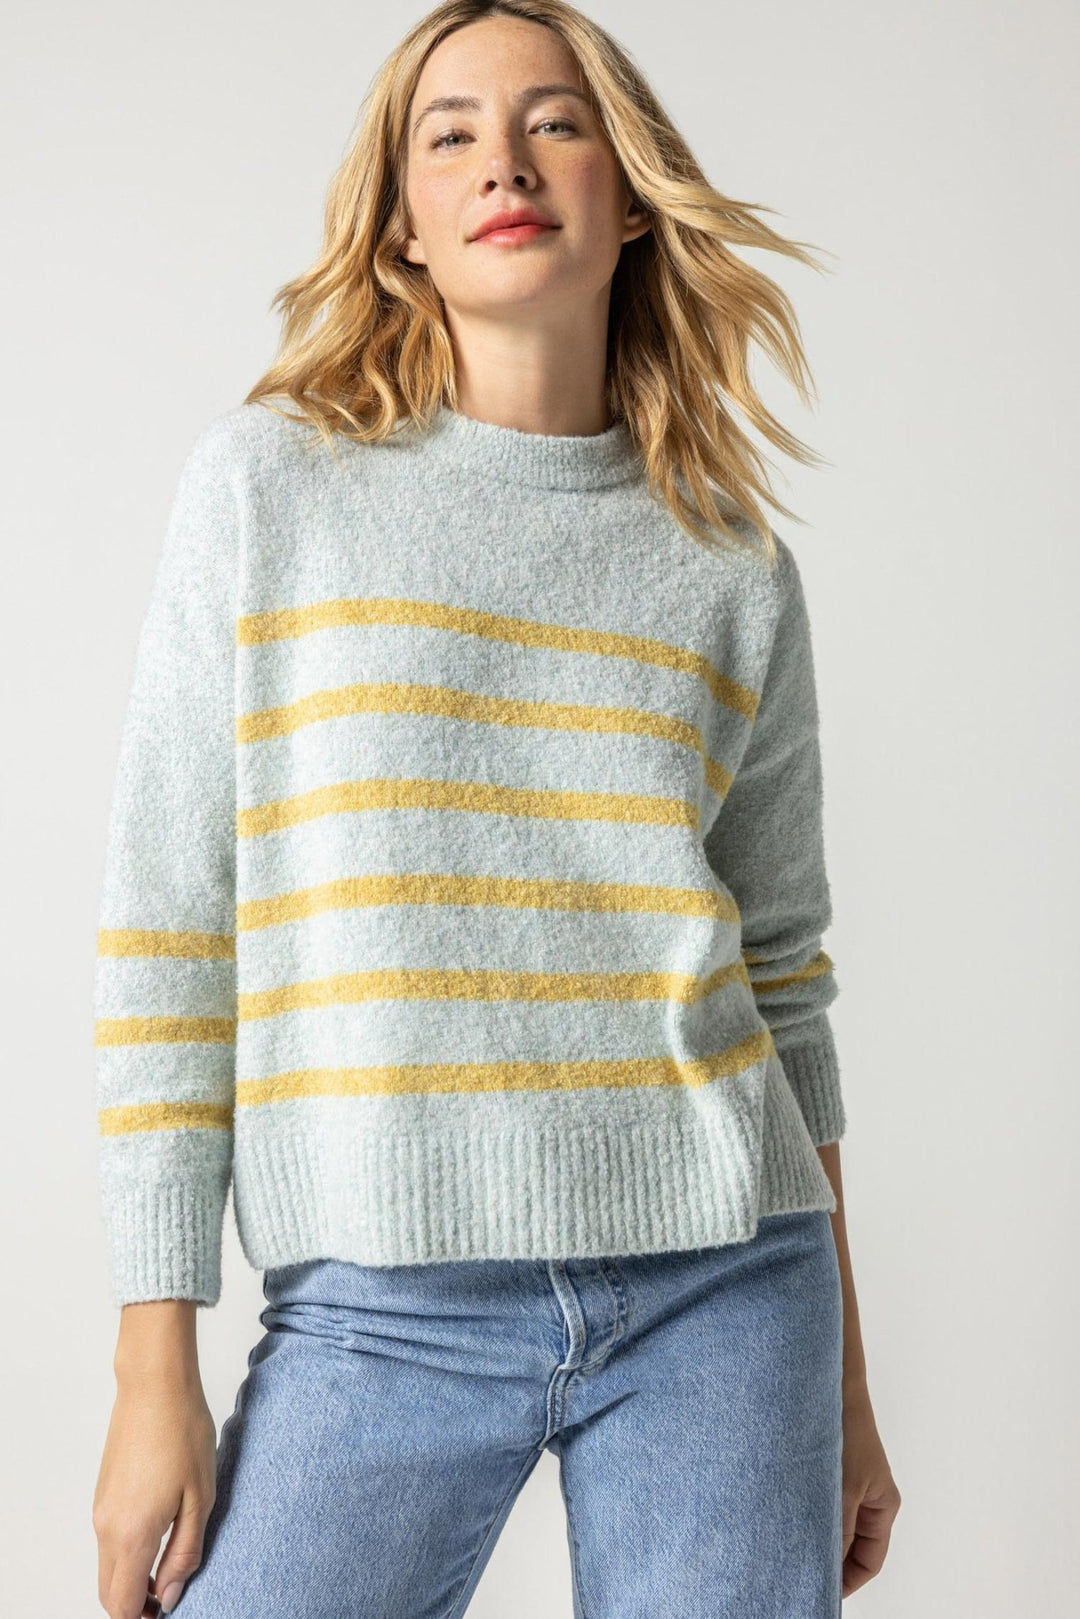 Lilla P - Easy Stripe Pullover Sweater: Iceberg - Shorely Chic Boutique